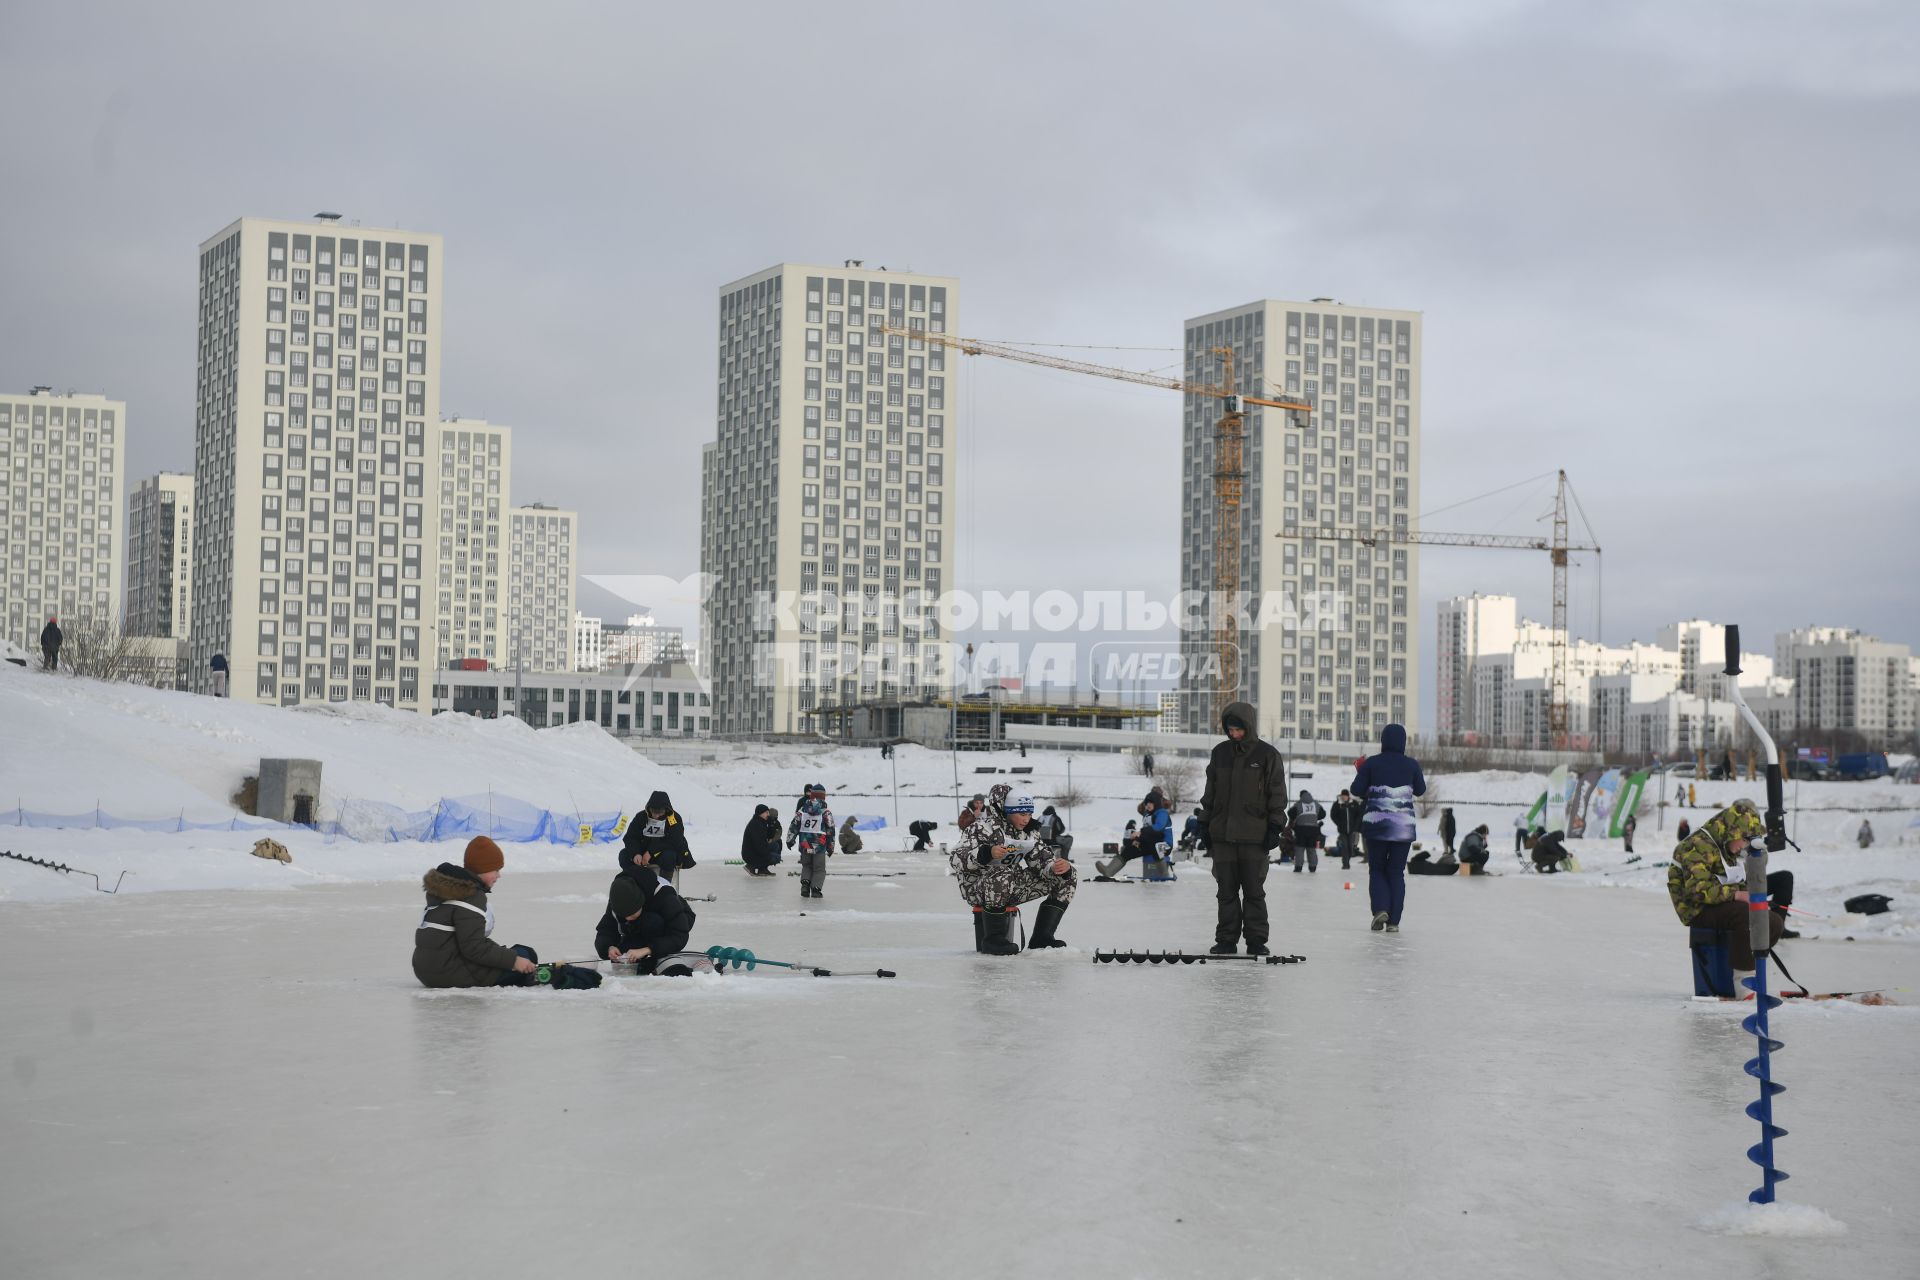 Соревнования по зимней рыбалке  в Академическом районе Екатеринбурга